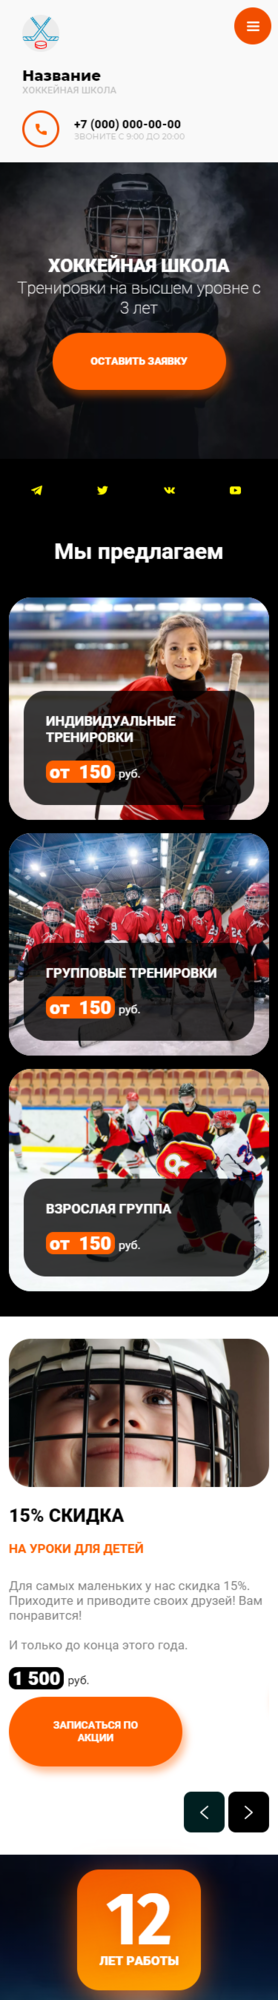 Готовый Сайт-Бизнес № 3404400 - Хоккейная школа (Мобильная версия)